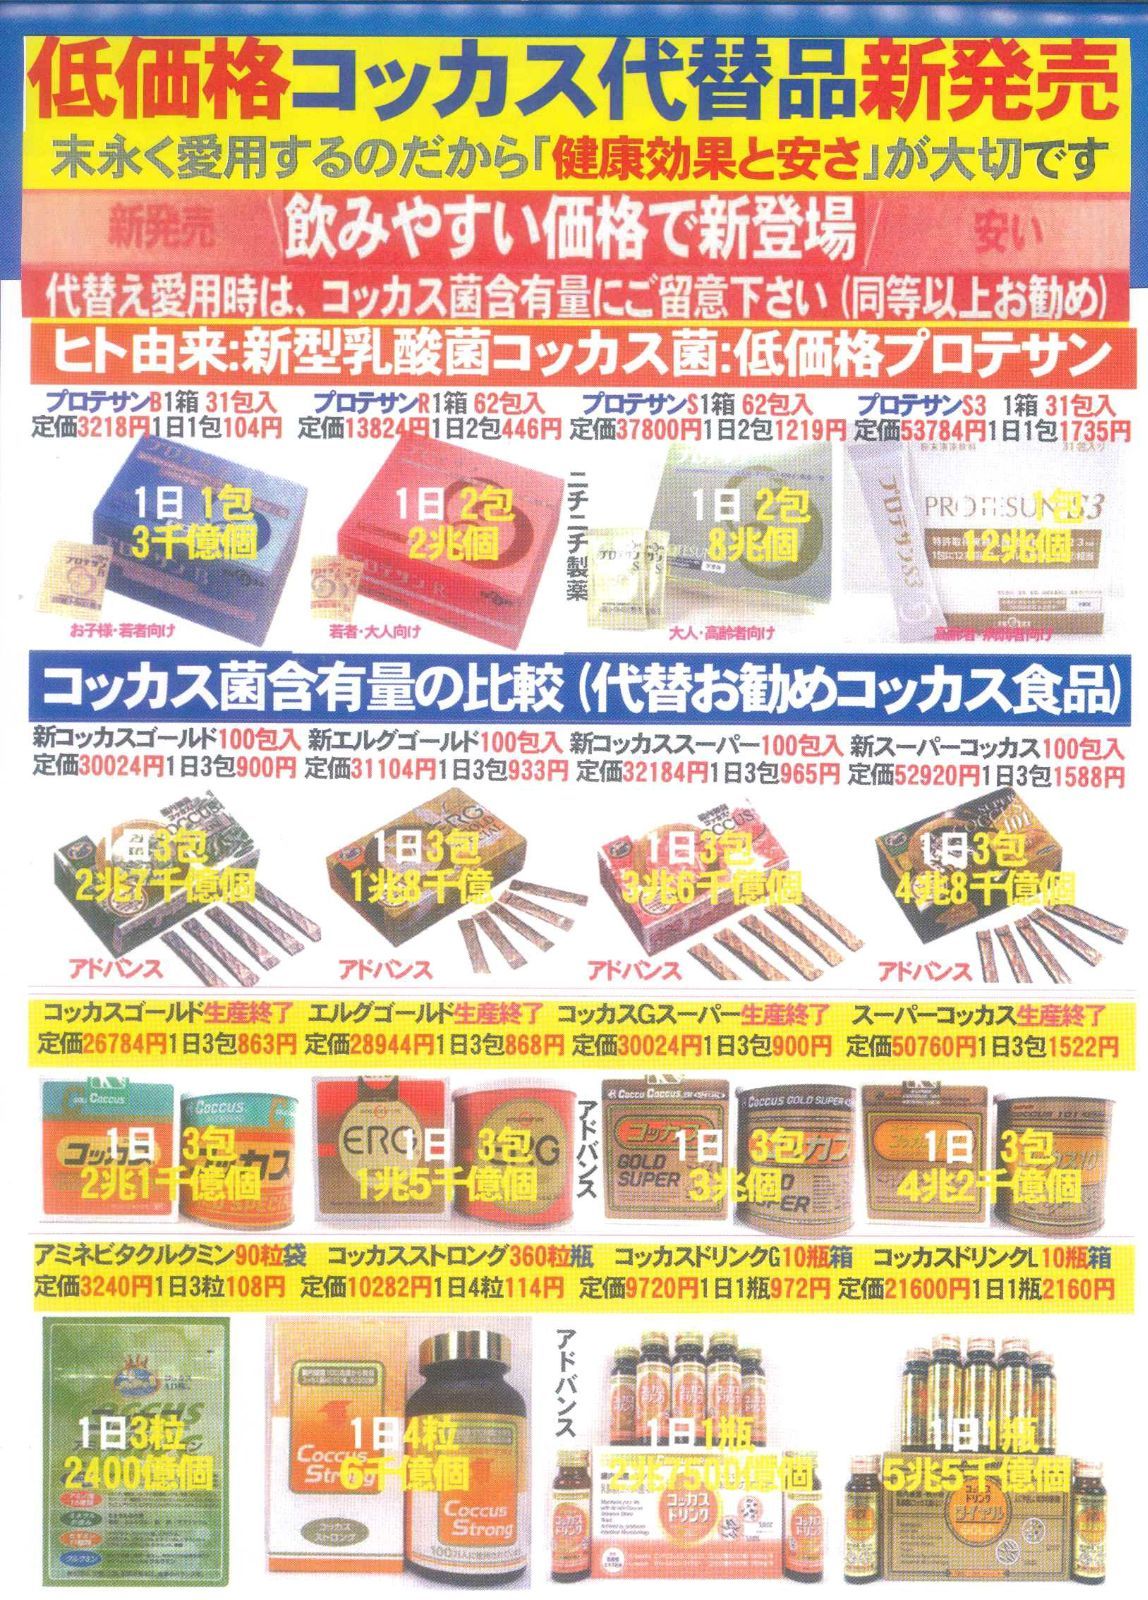 コッカスゴールドスーパー缶入x1缶・生産終了僅少品・(新商品:化粧箱入) - メルカリ